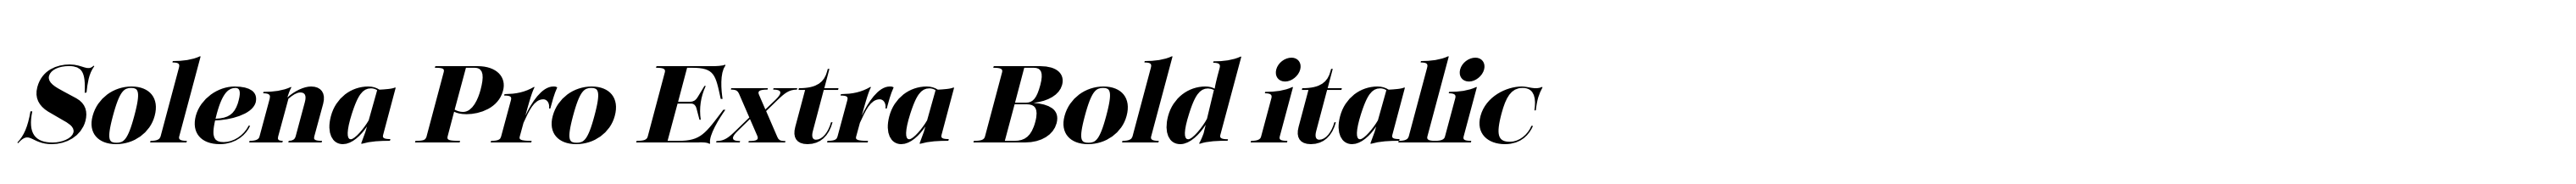 Solena Pro Extra Bold italic